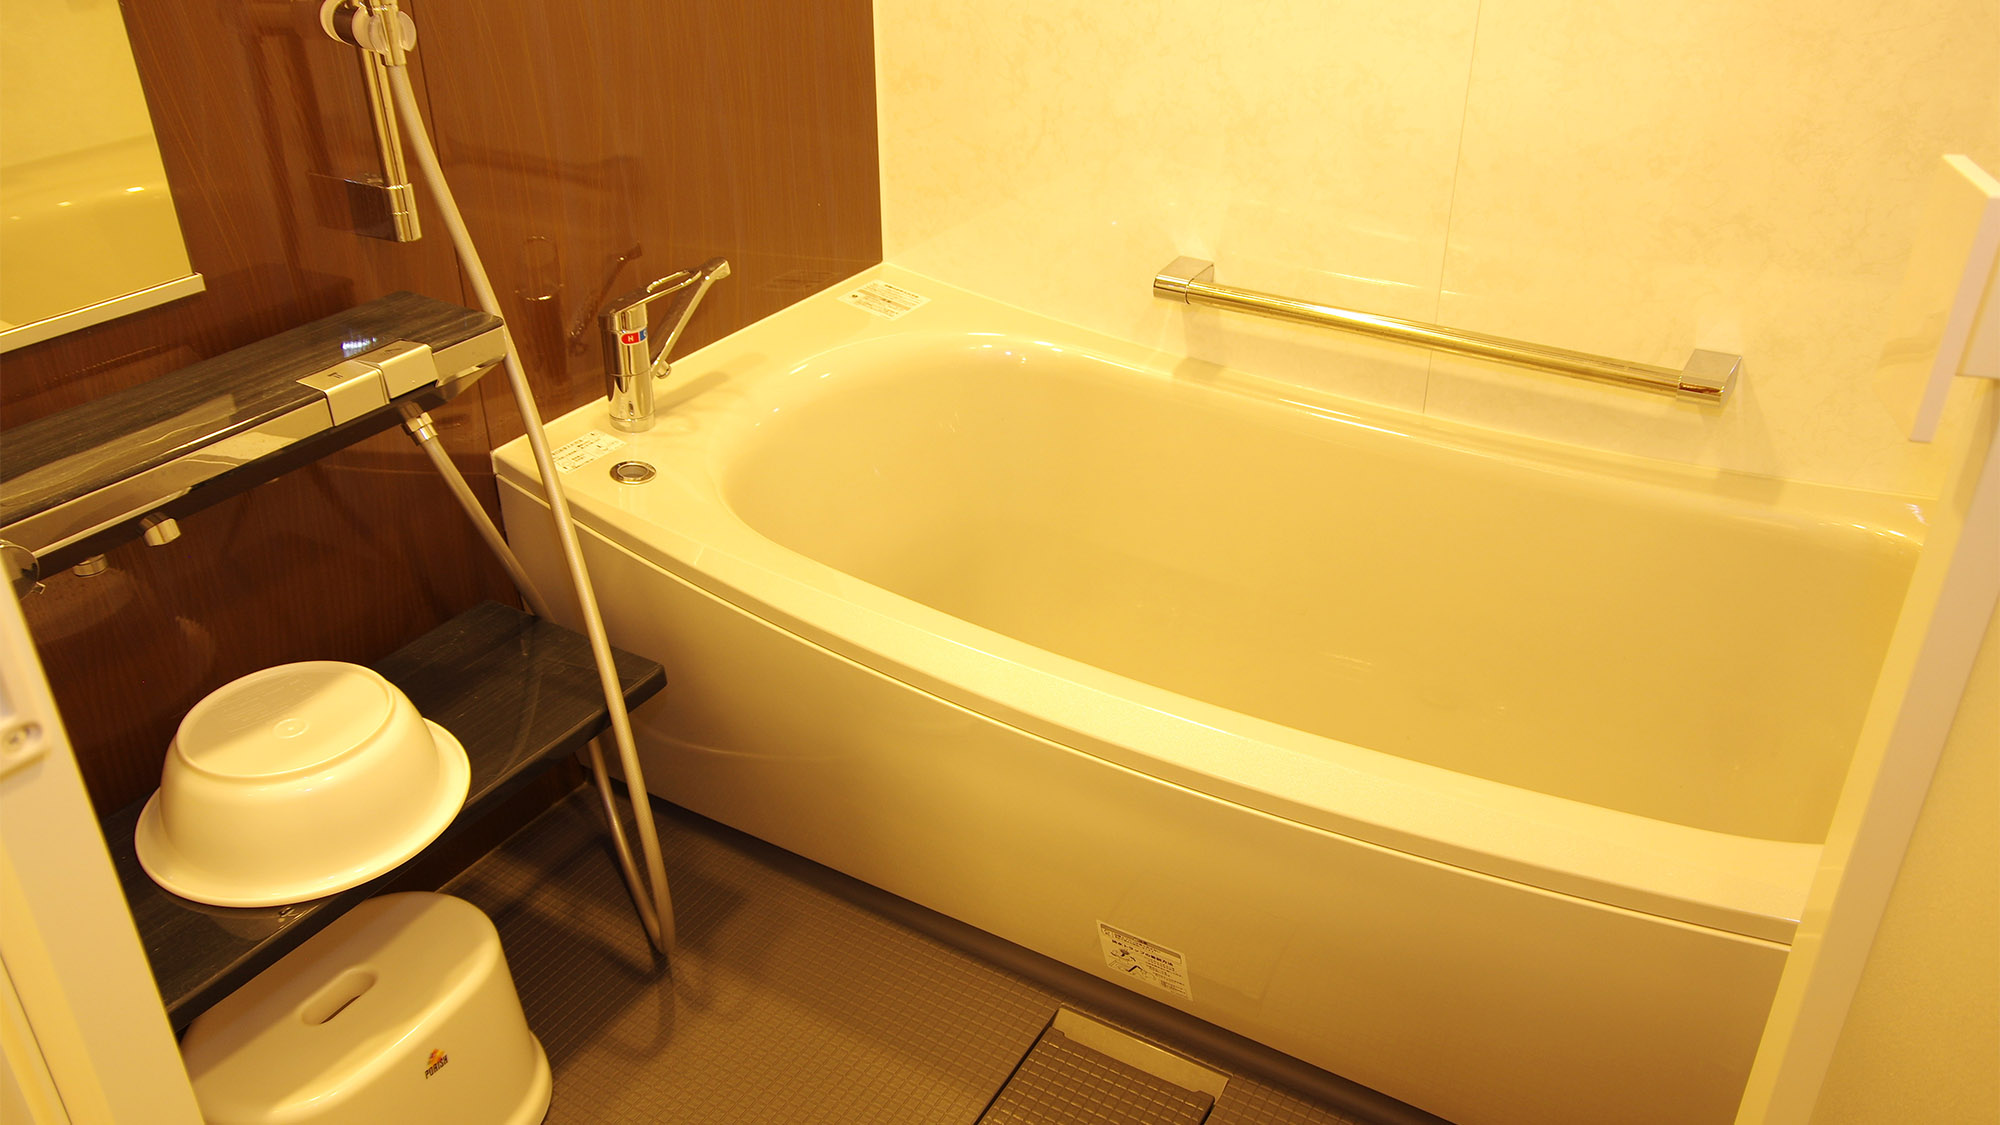 ・【浴室】清潔に保たれた客室風呂。足をのばしてゆっくり休めます